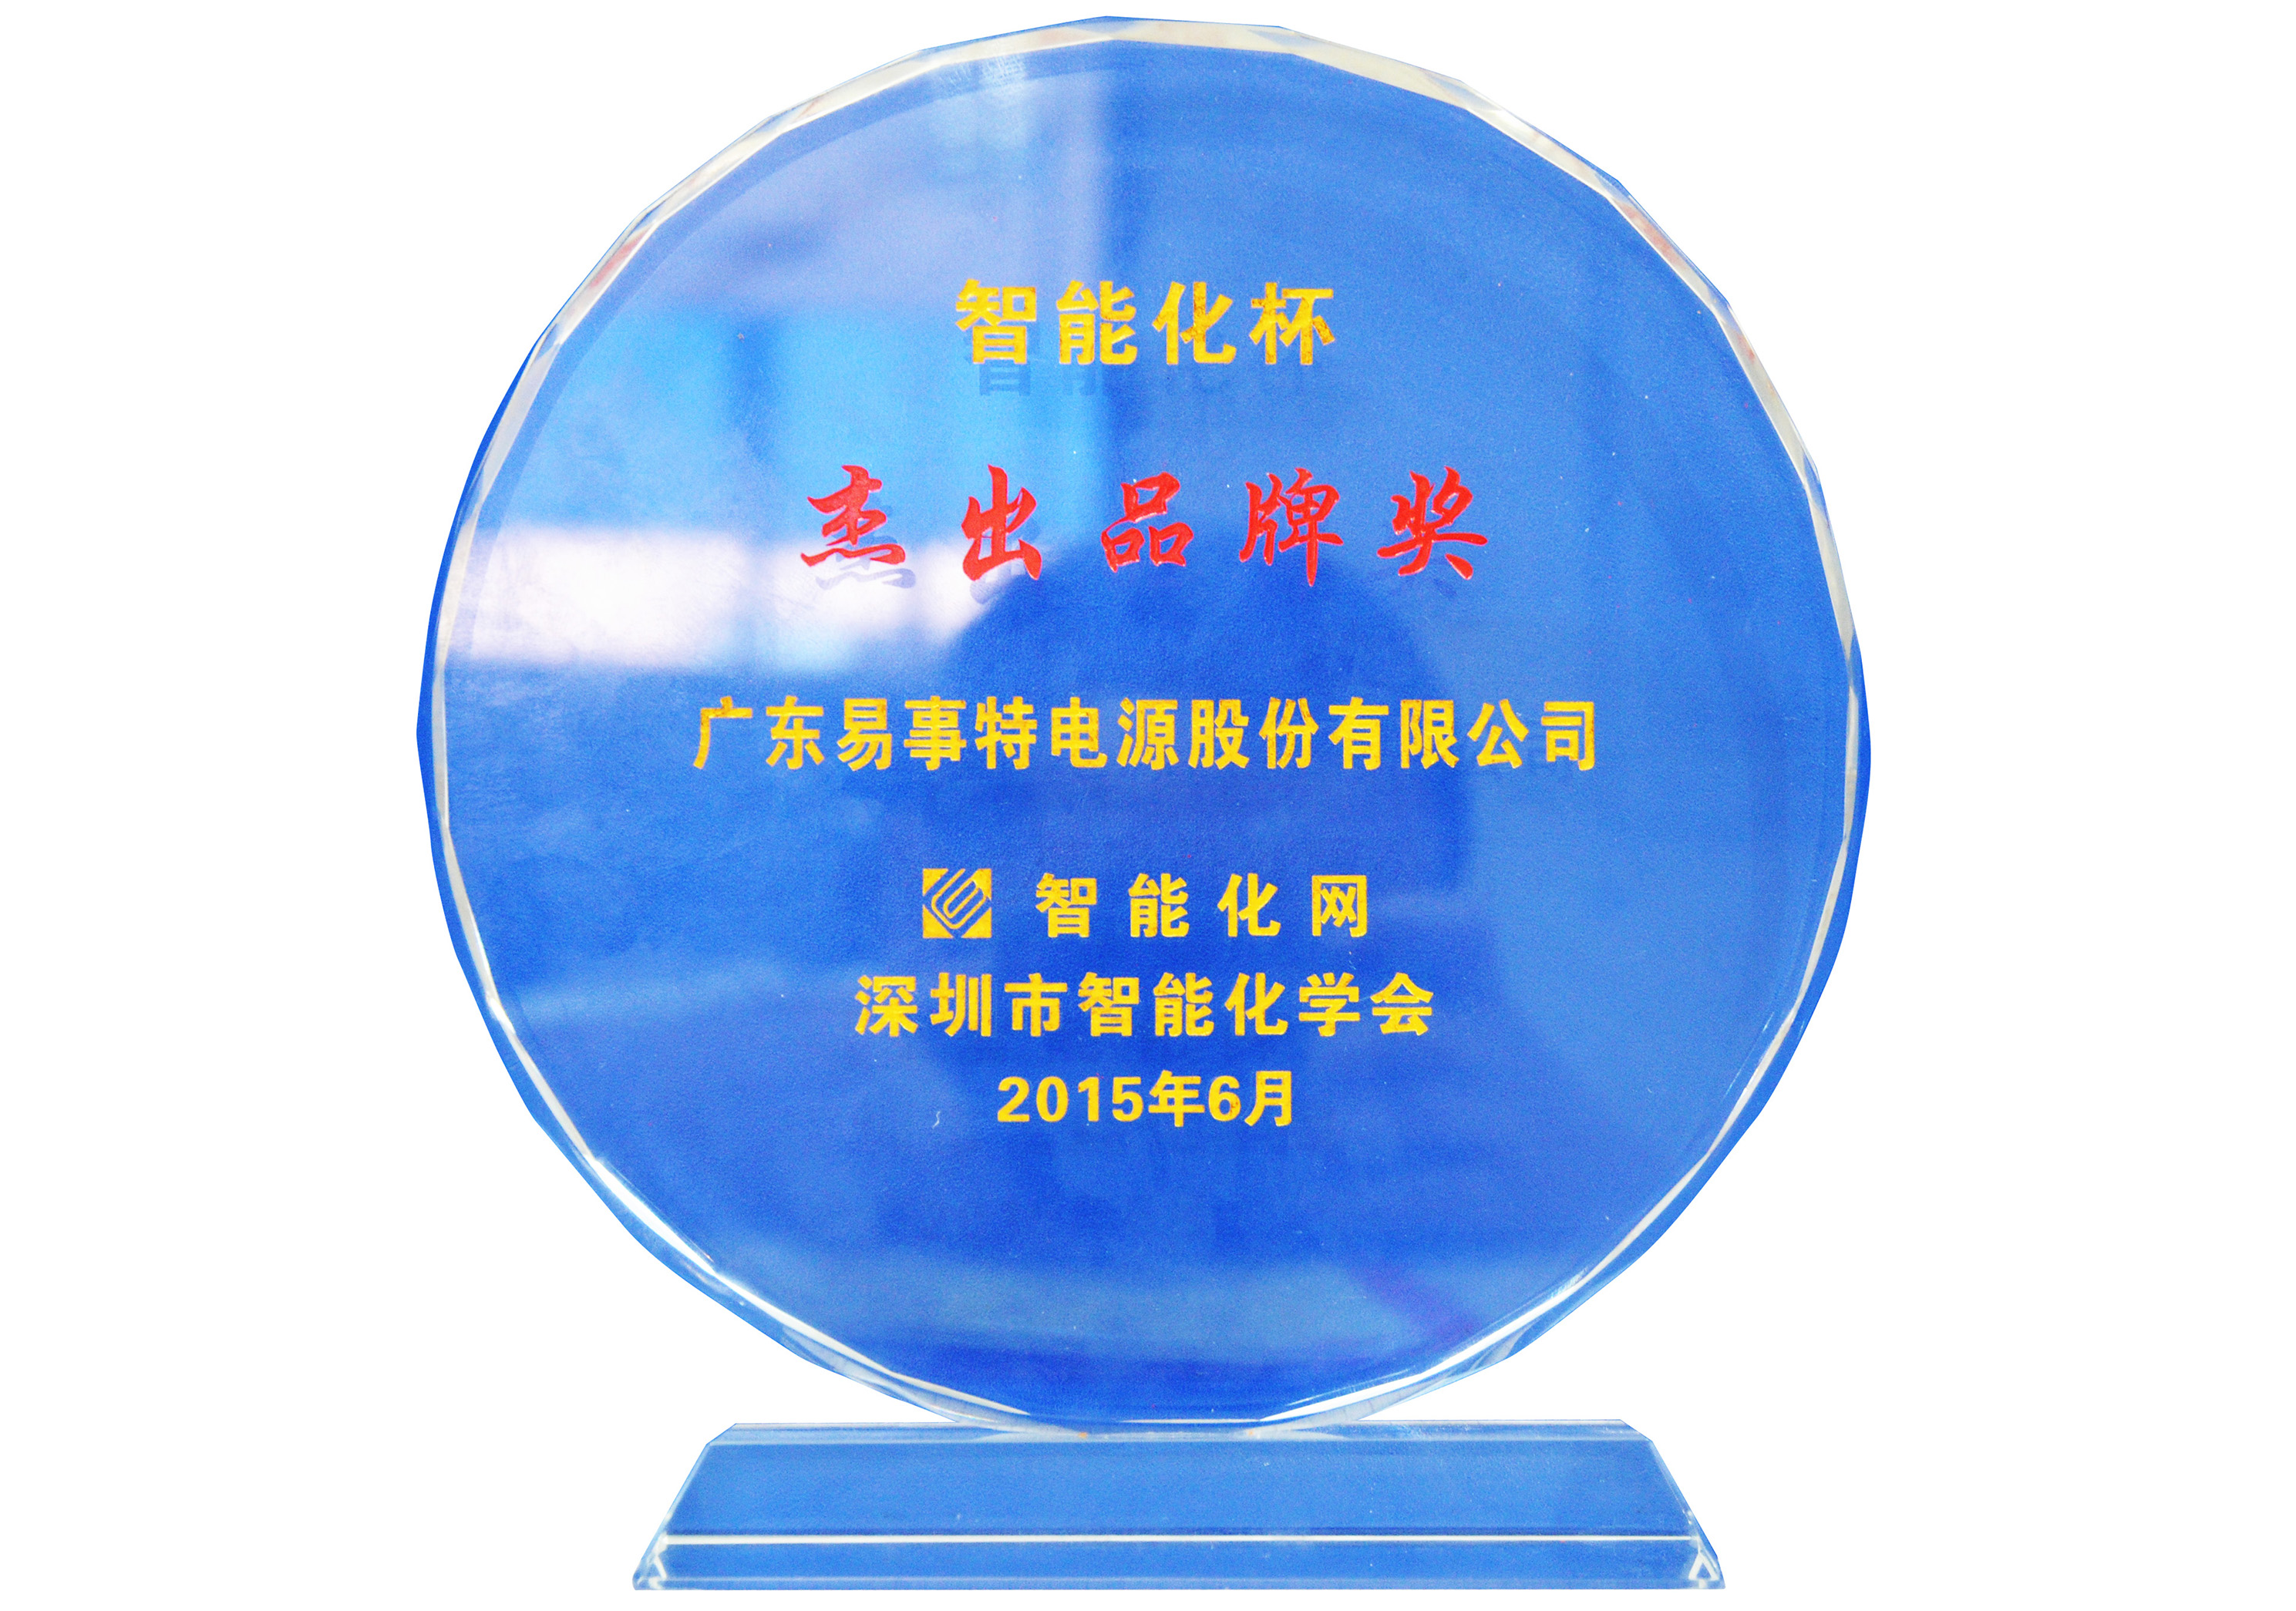 2015年度智能化杯“杰出品牌獎”